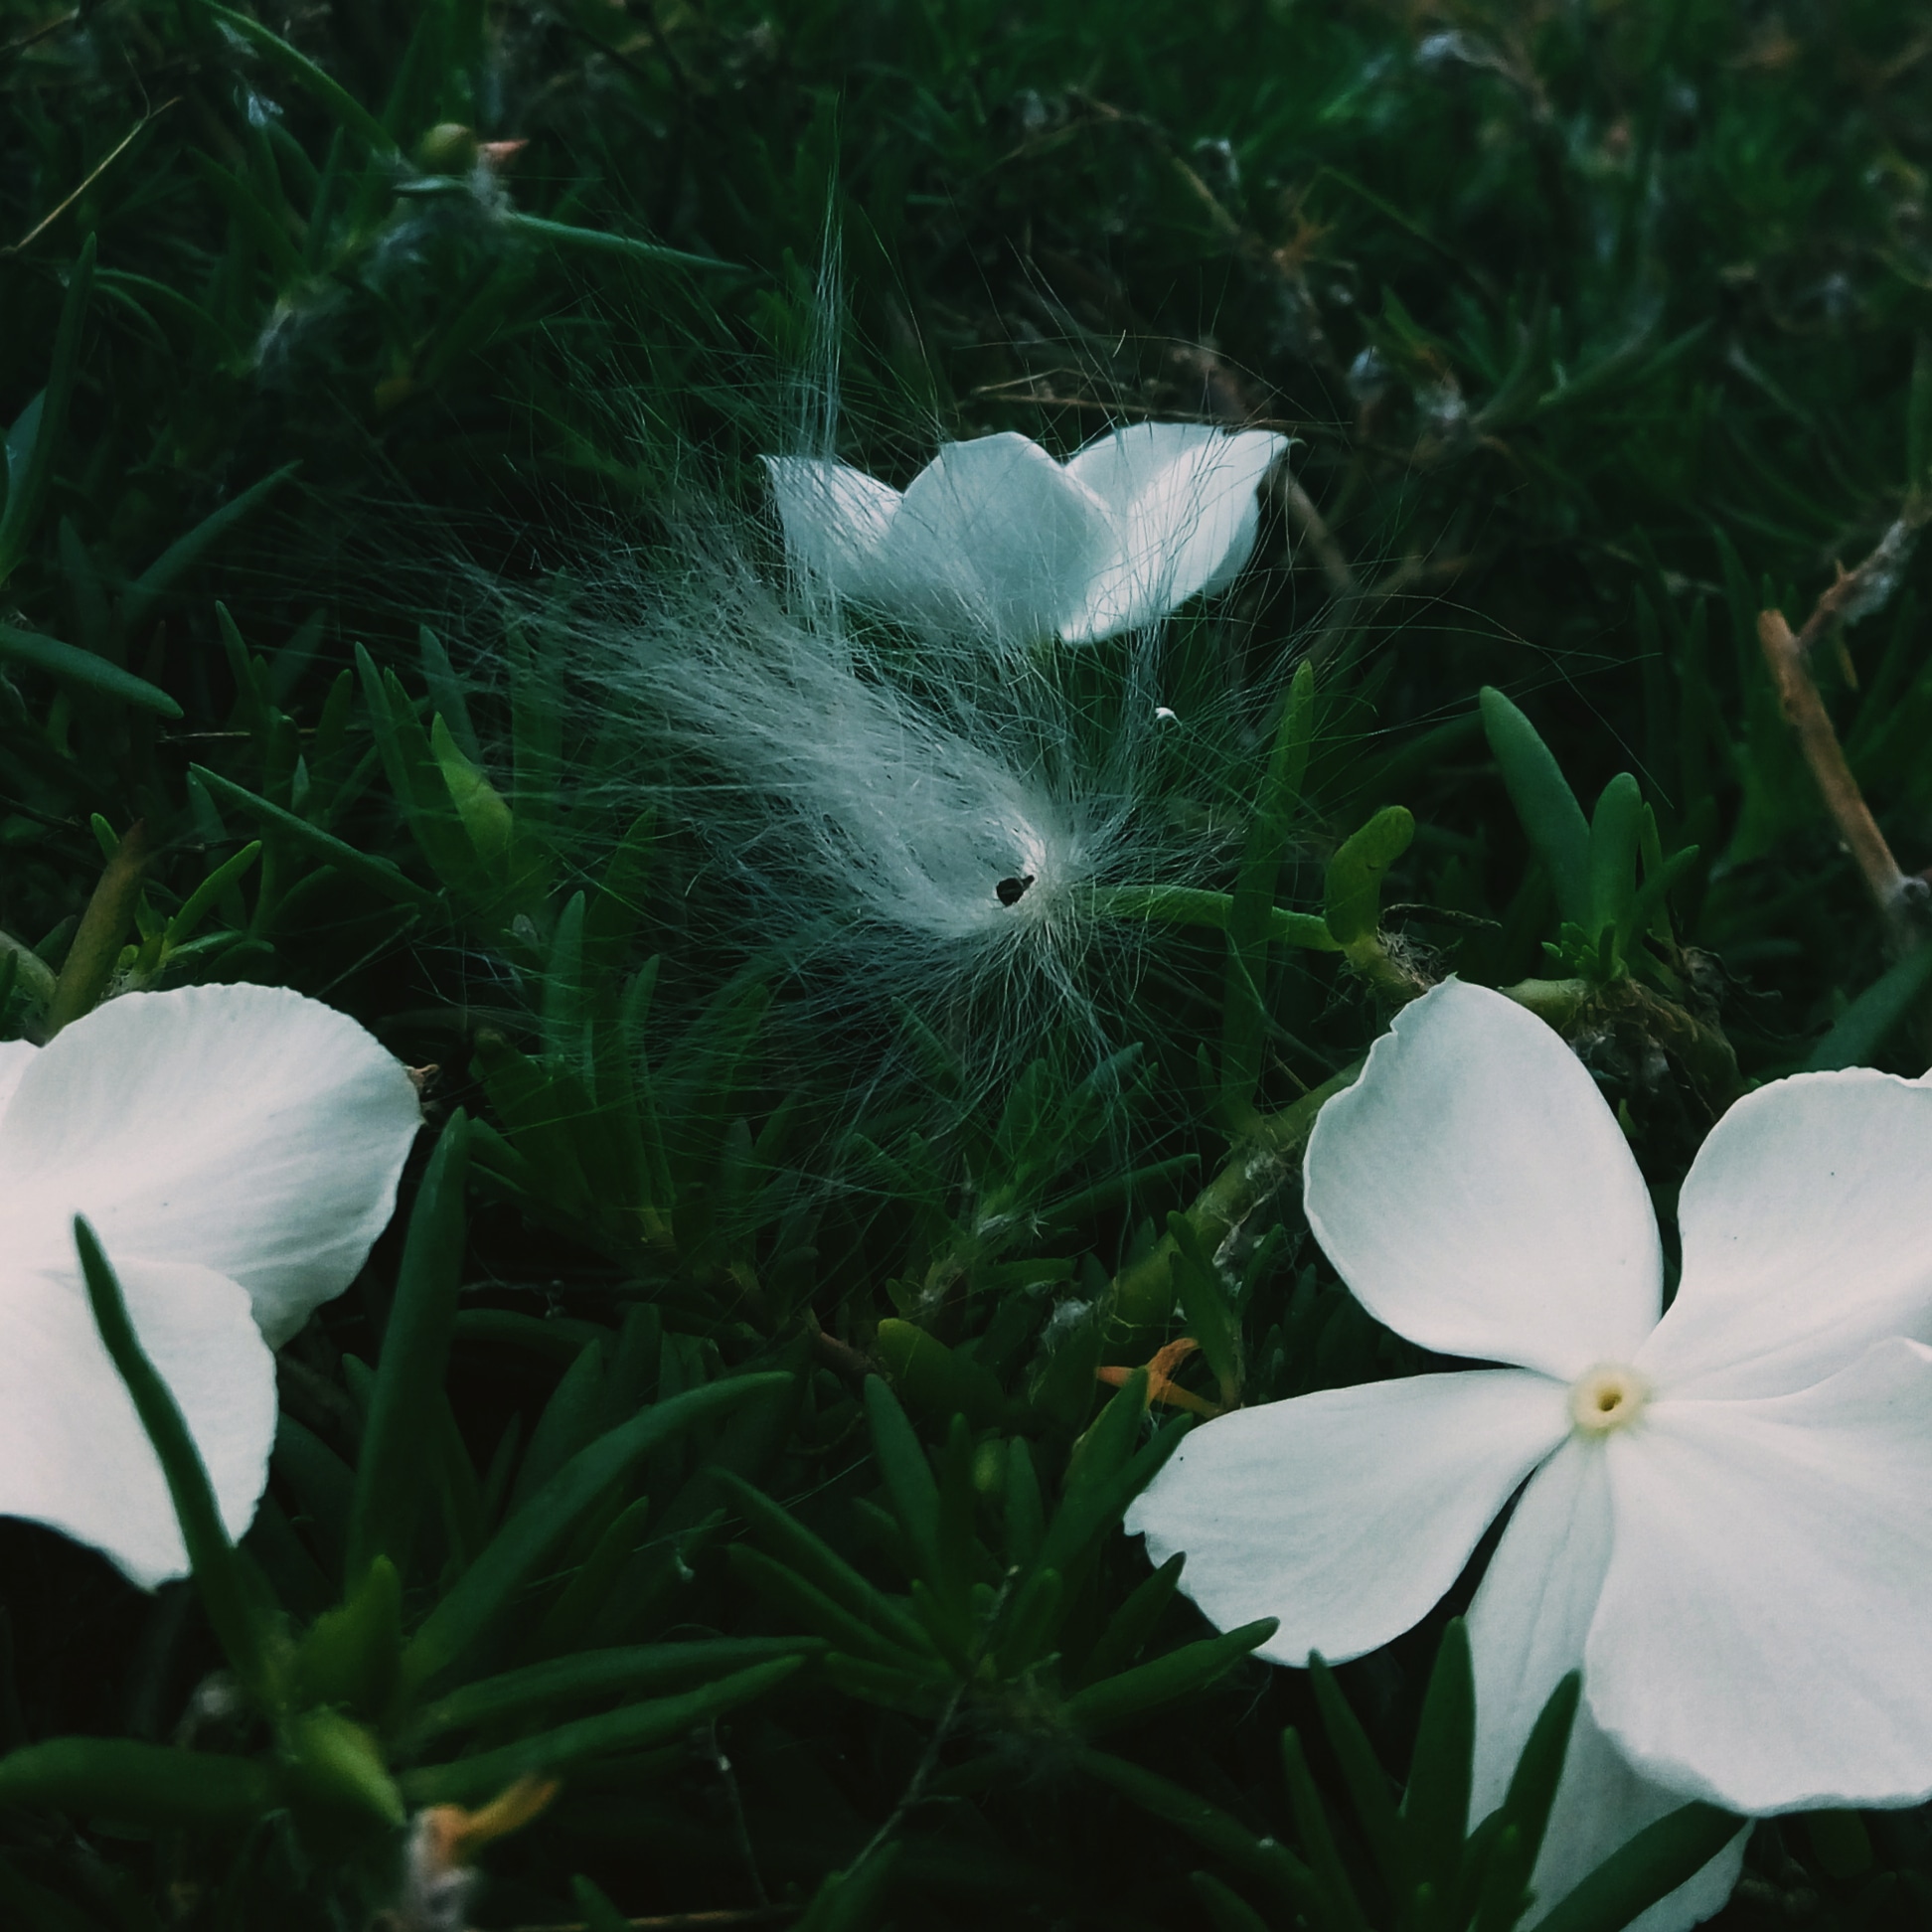 White flower blossoms